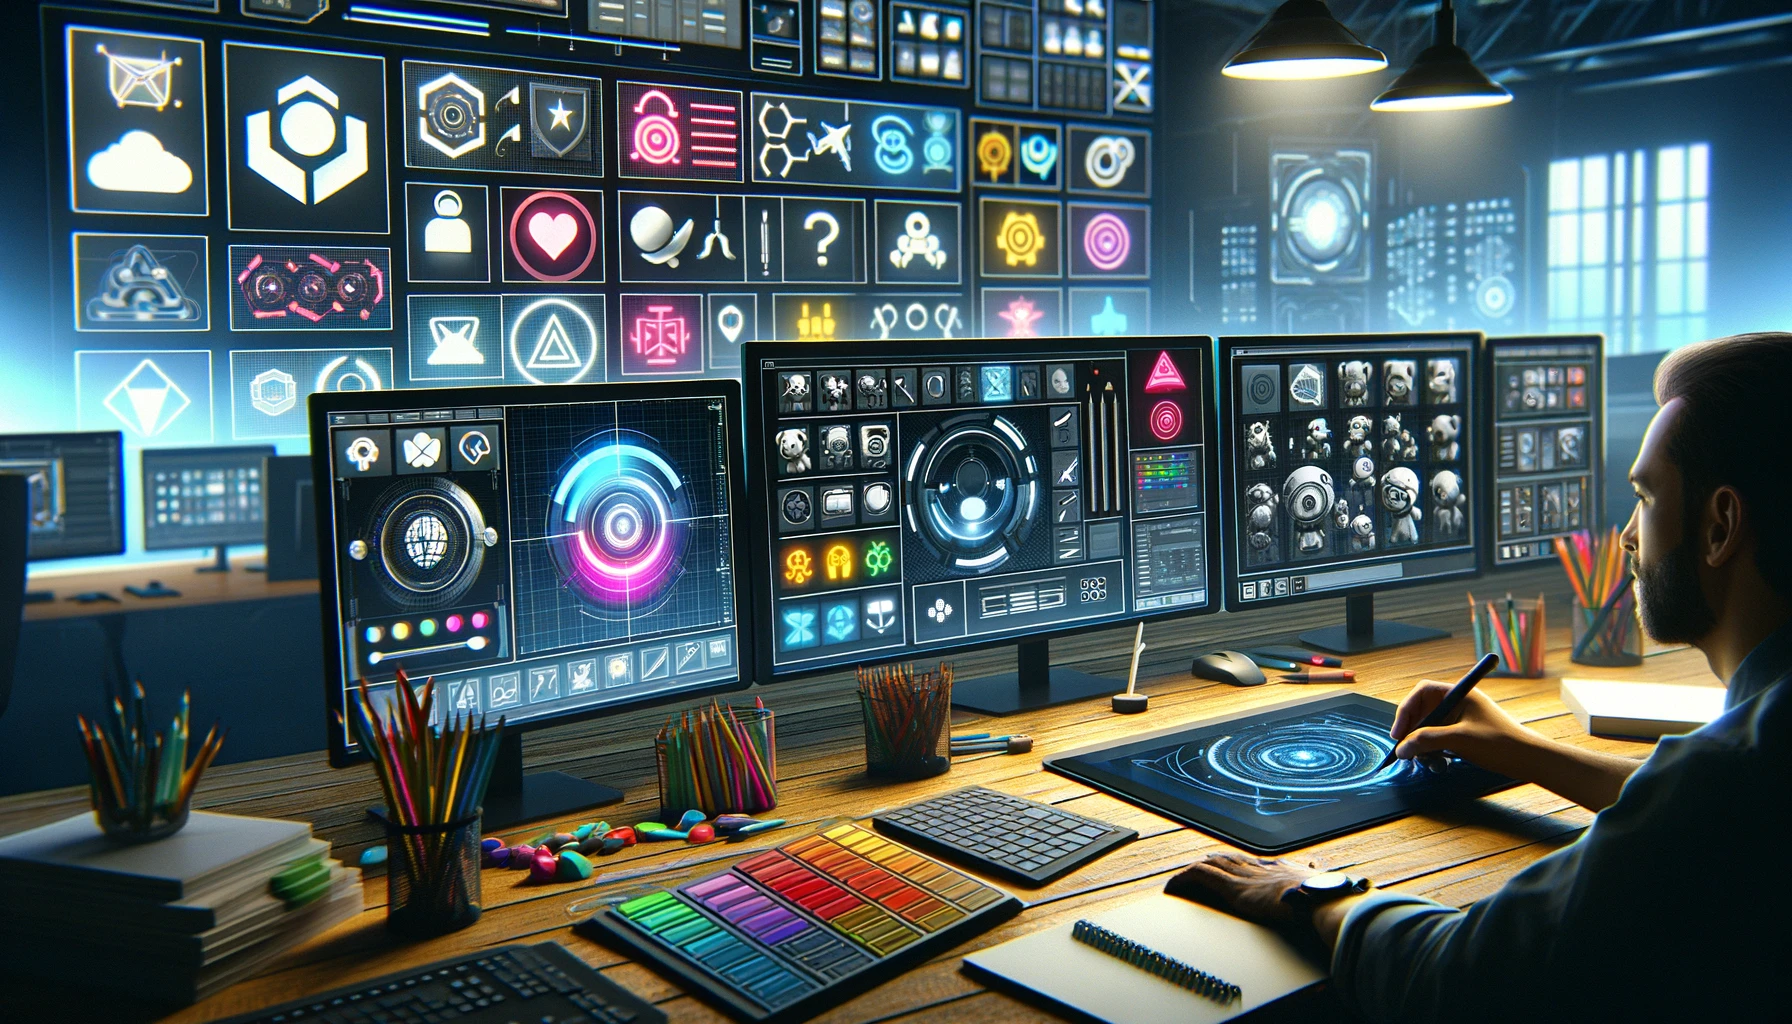 Innovatív ikon- és gombdizájn a CreativeTech Studio játékmenükhöz